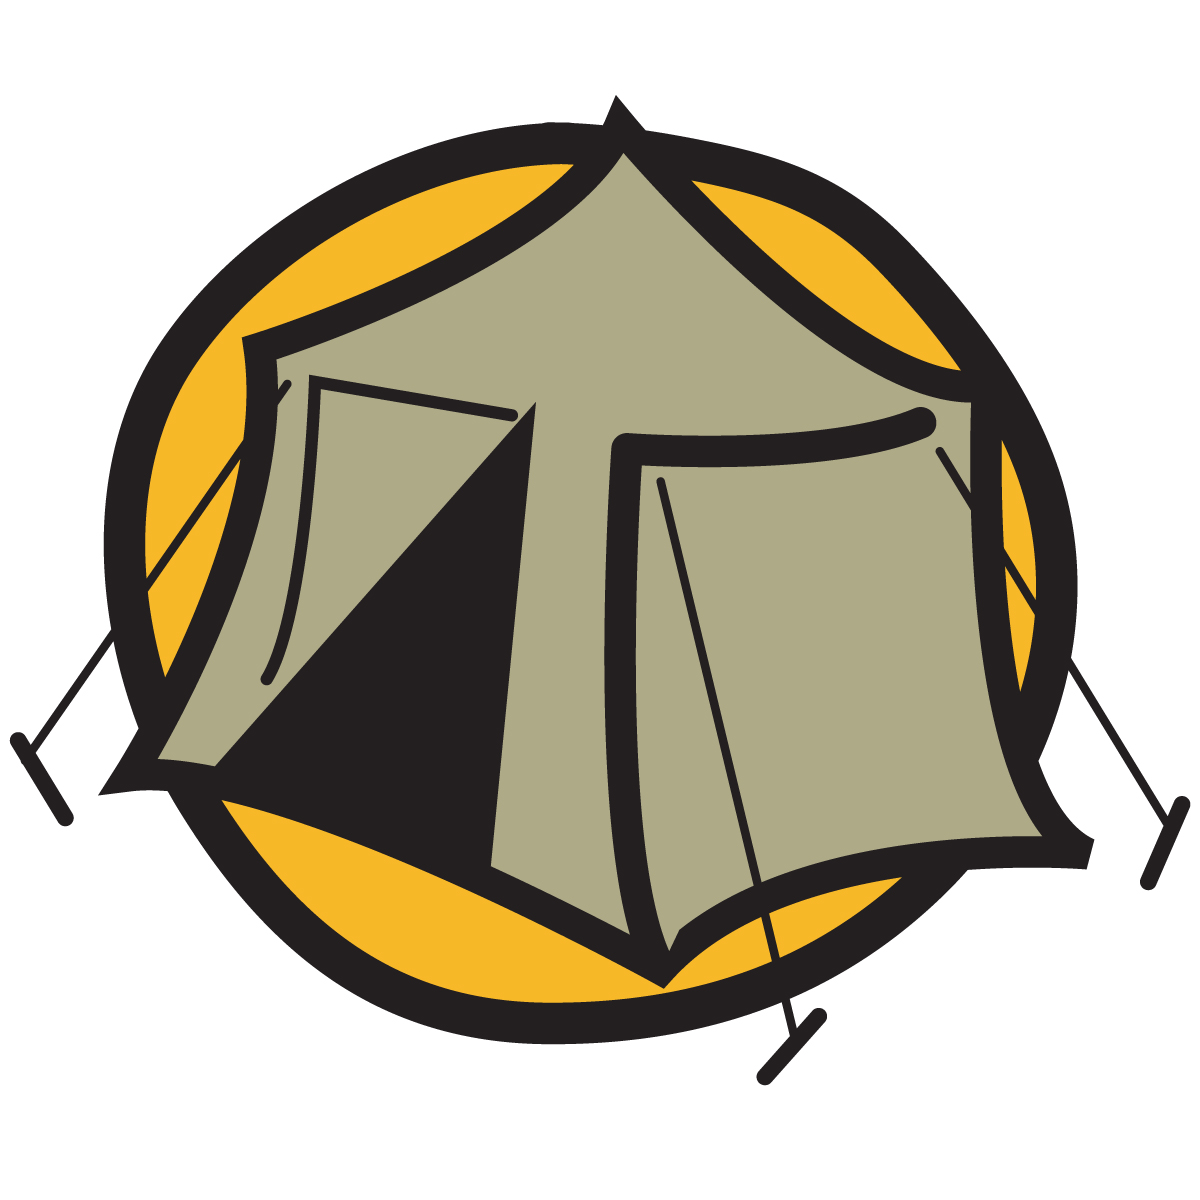 Campfire tent clip art clipart